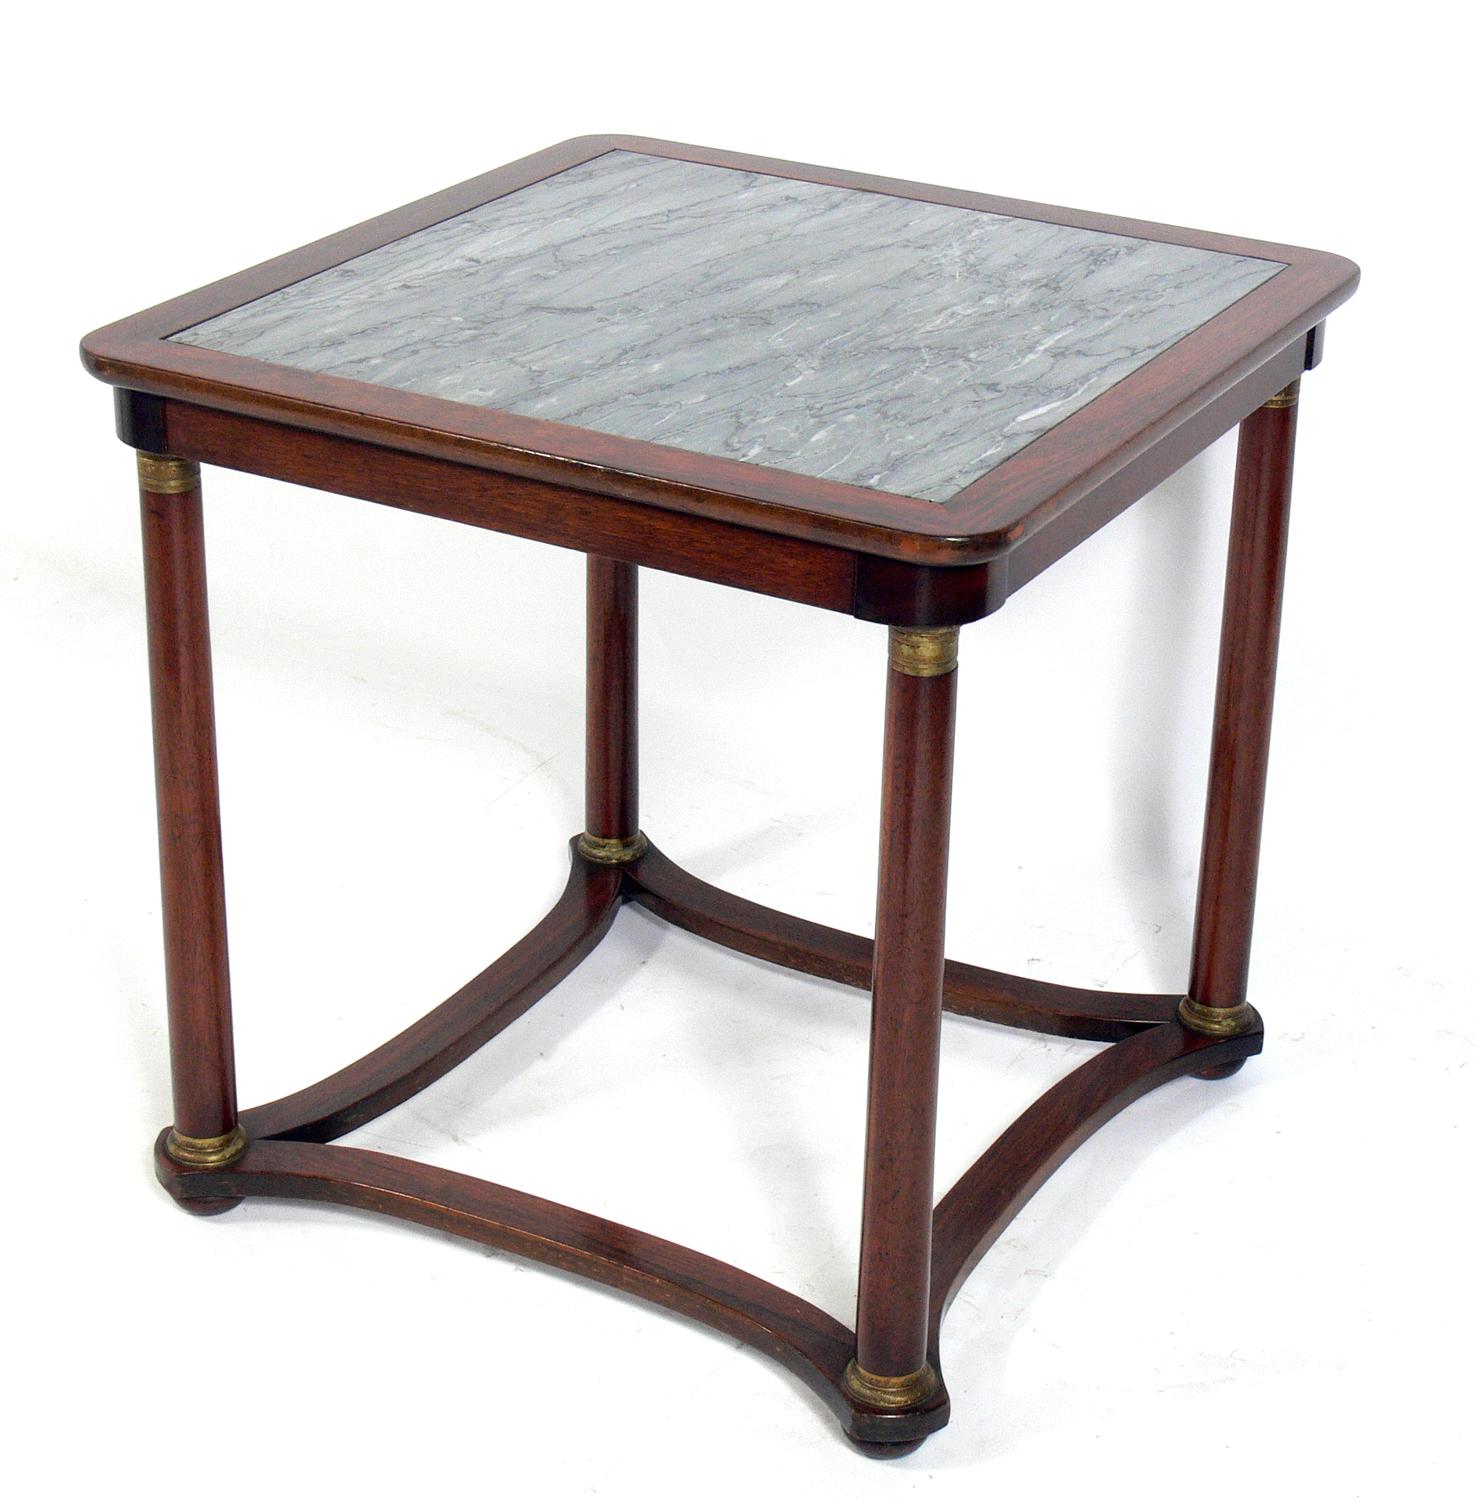 Neoklassizistischer Tisch aus Palisanderholz und Marmor, wahrscheinlich französisch, um 1940, möglicherweise früher. Er ist aus Palisander und anderen Hölzern gefertigt, mit Messing- oder Bronzebeschlägen und einer Platte aus italienischem grauem